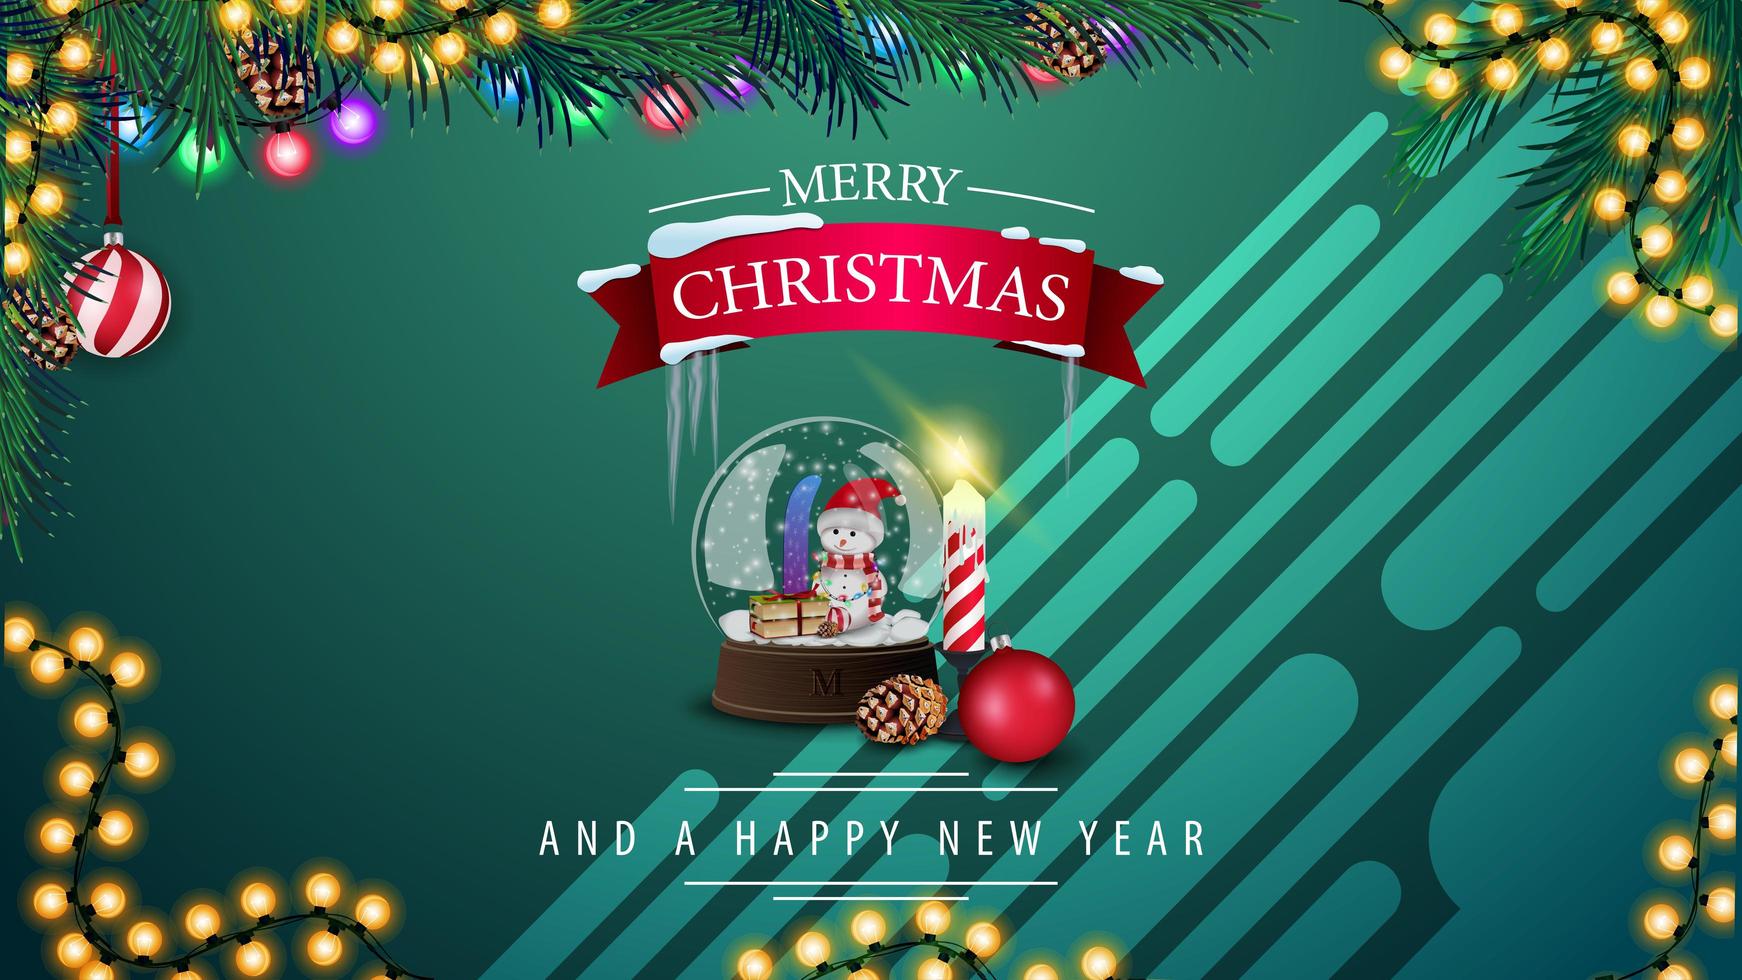 Joyeux Noël et bonne année, carte postale horizontale verte avec boule à neige, guirlande et branche d'arbre de Noël vecteur